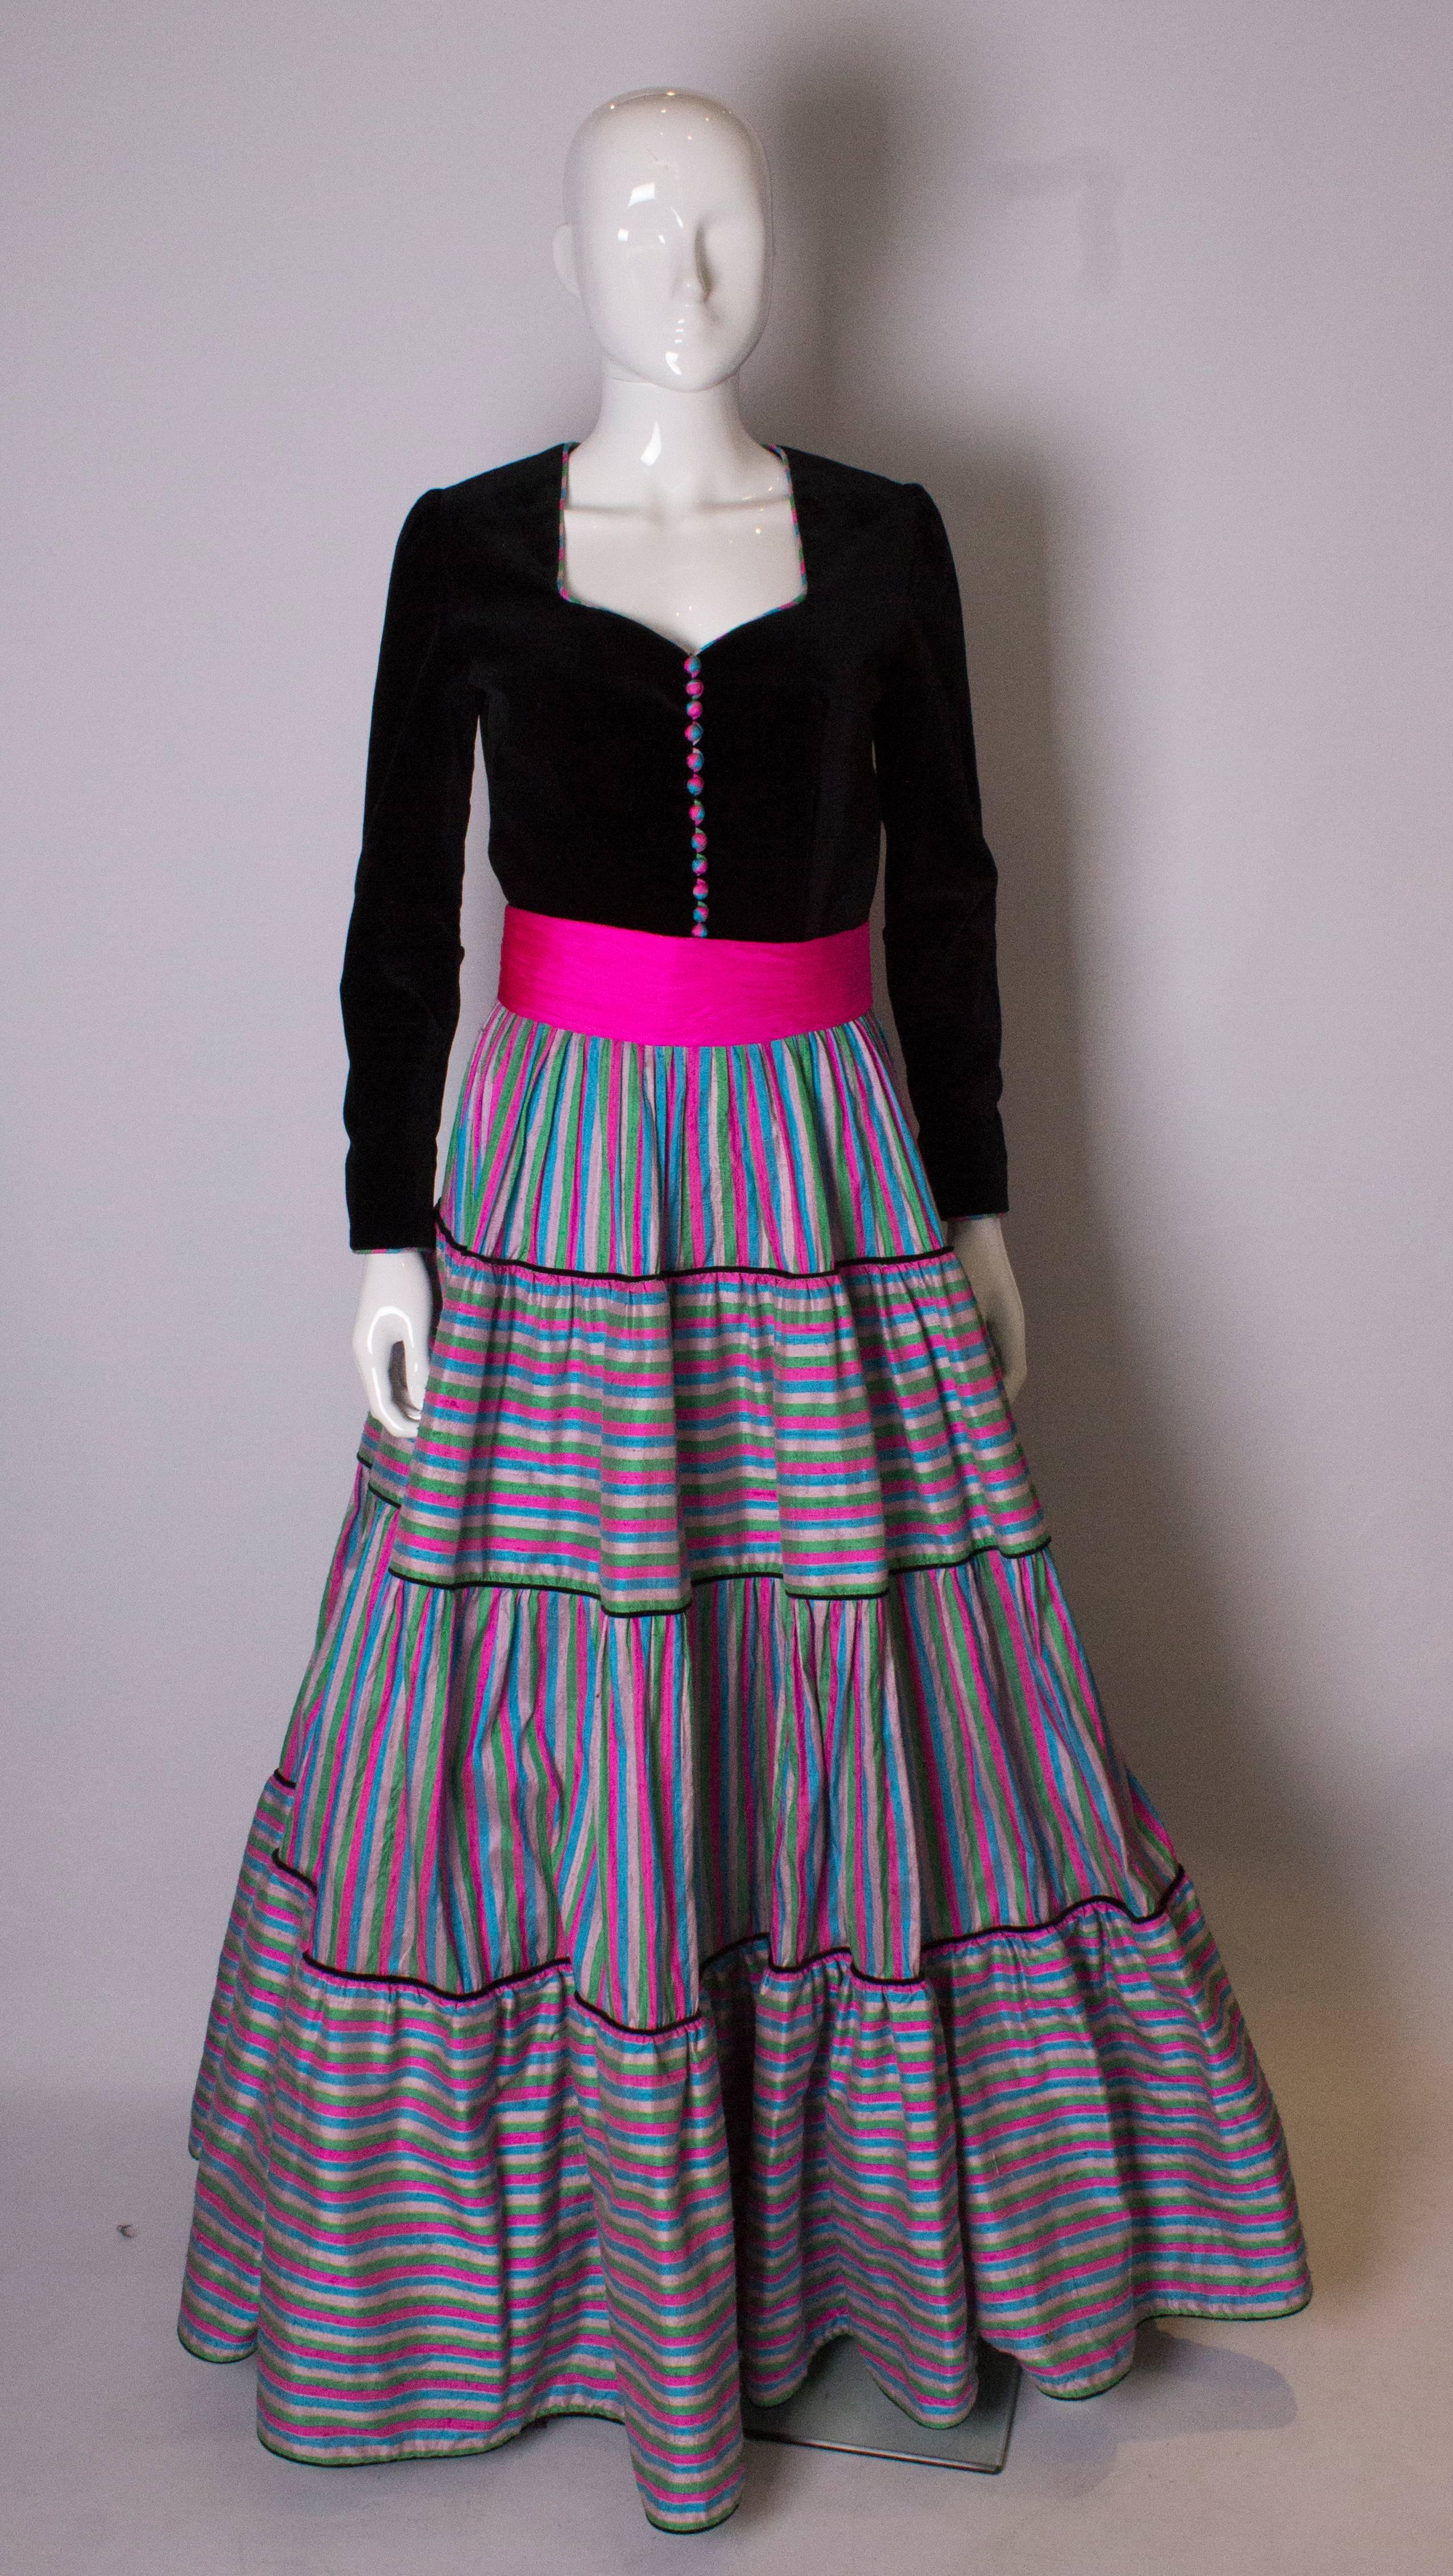 Ein tolles Vintage-Kleid von Regamus London. Das Oberteil des Kleides besteht aus schwarzem Samt und hat einen herzförmigen Ausschnitt. Es hat einen vollen Rock mit Seidenlagen aus horizontal und vertikal gestreifter Seide. Es hat einen Unterrock